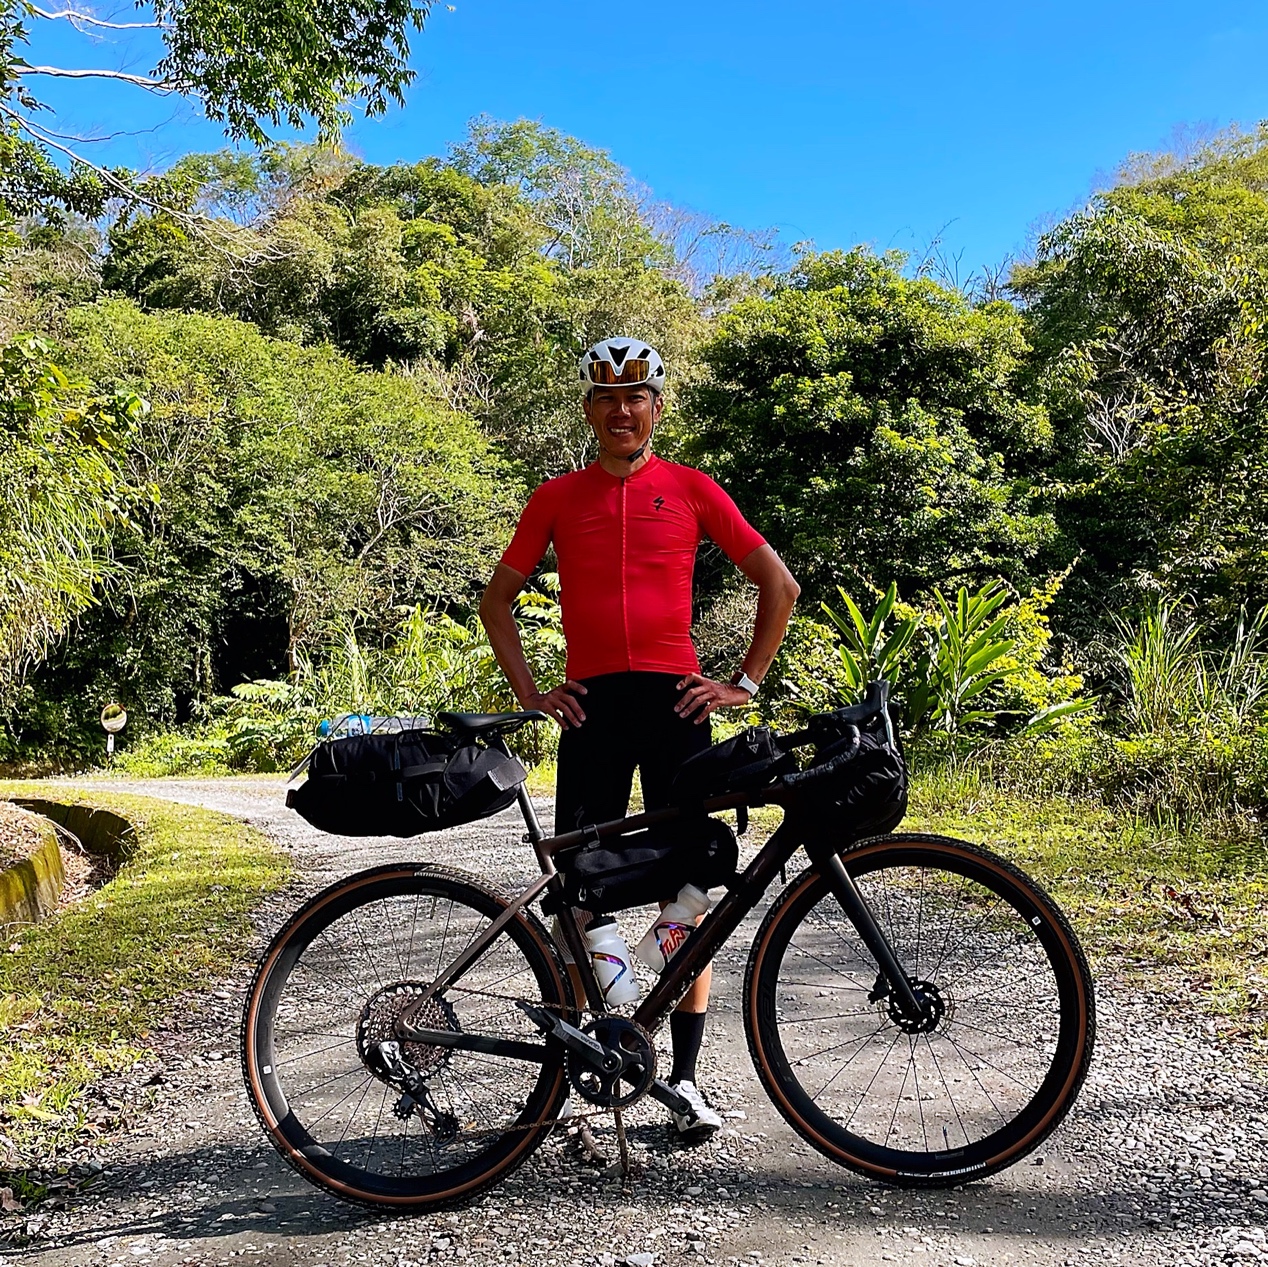 Kent 在過年期間用七天時間，一個人騎礫石公路車 (Gravel Bike) 環島完成接近1,300公里，沿途順便探索附近的礫石路線，真的是Never stop exploring…